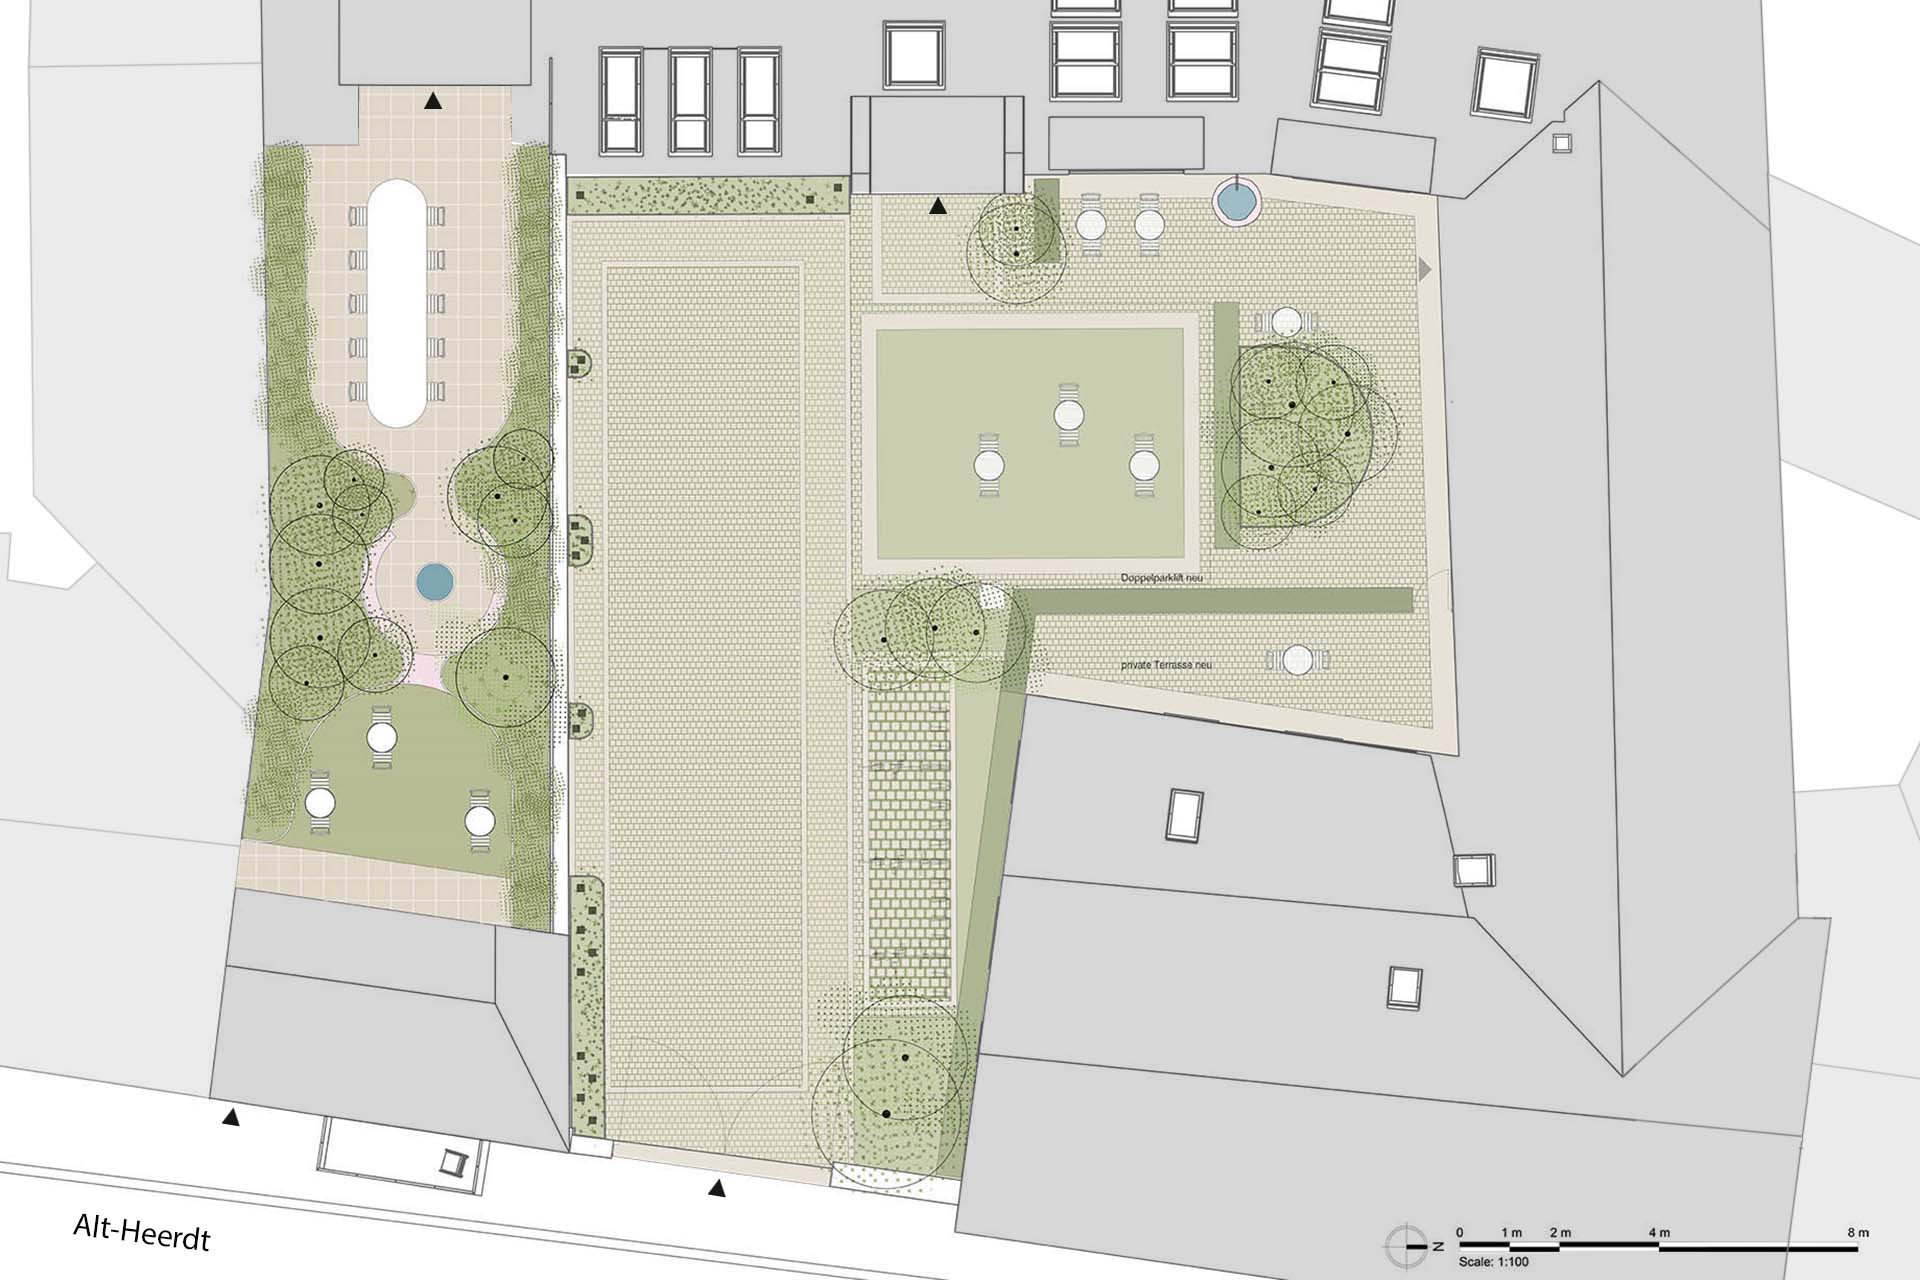 Djao-Rakitine Headquarter garden for estate developer